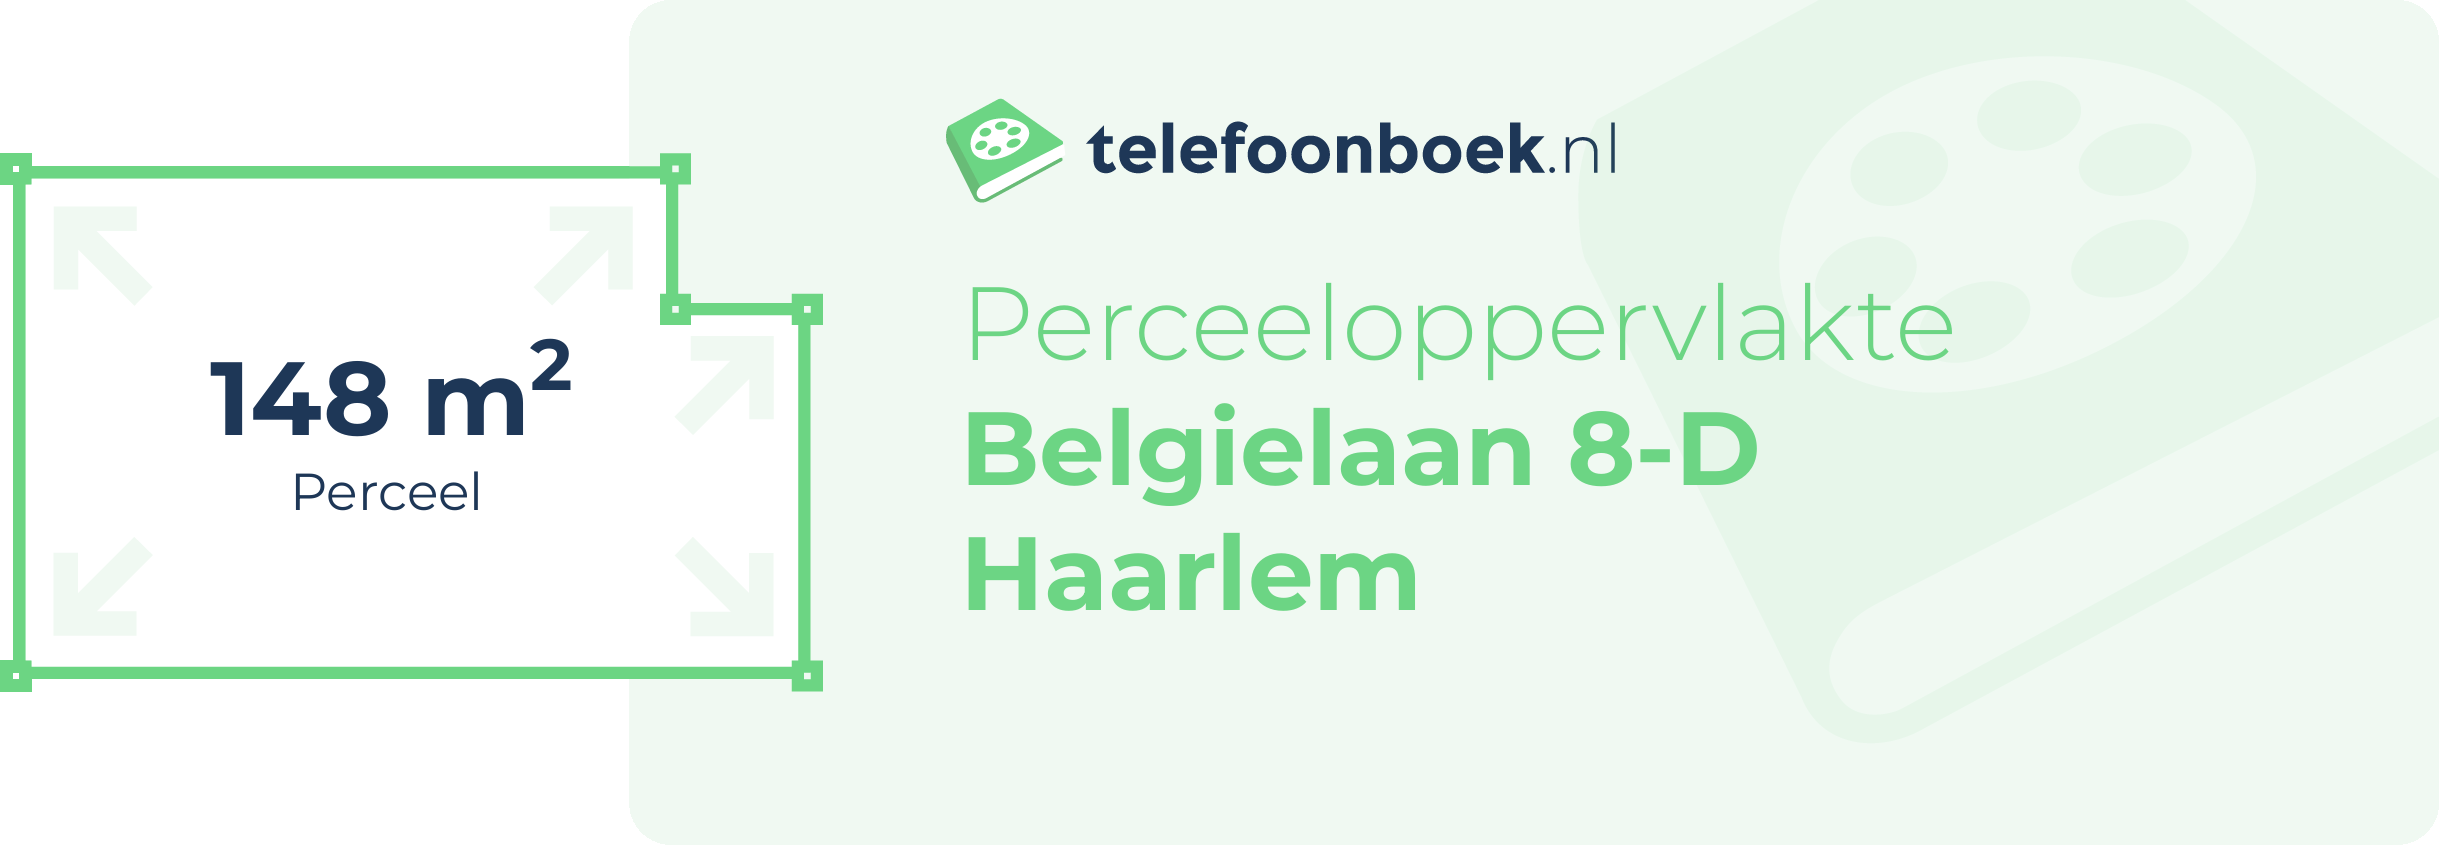 Perceeloppervlakte Belgielaan 8-D Haarlem